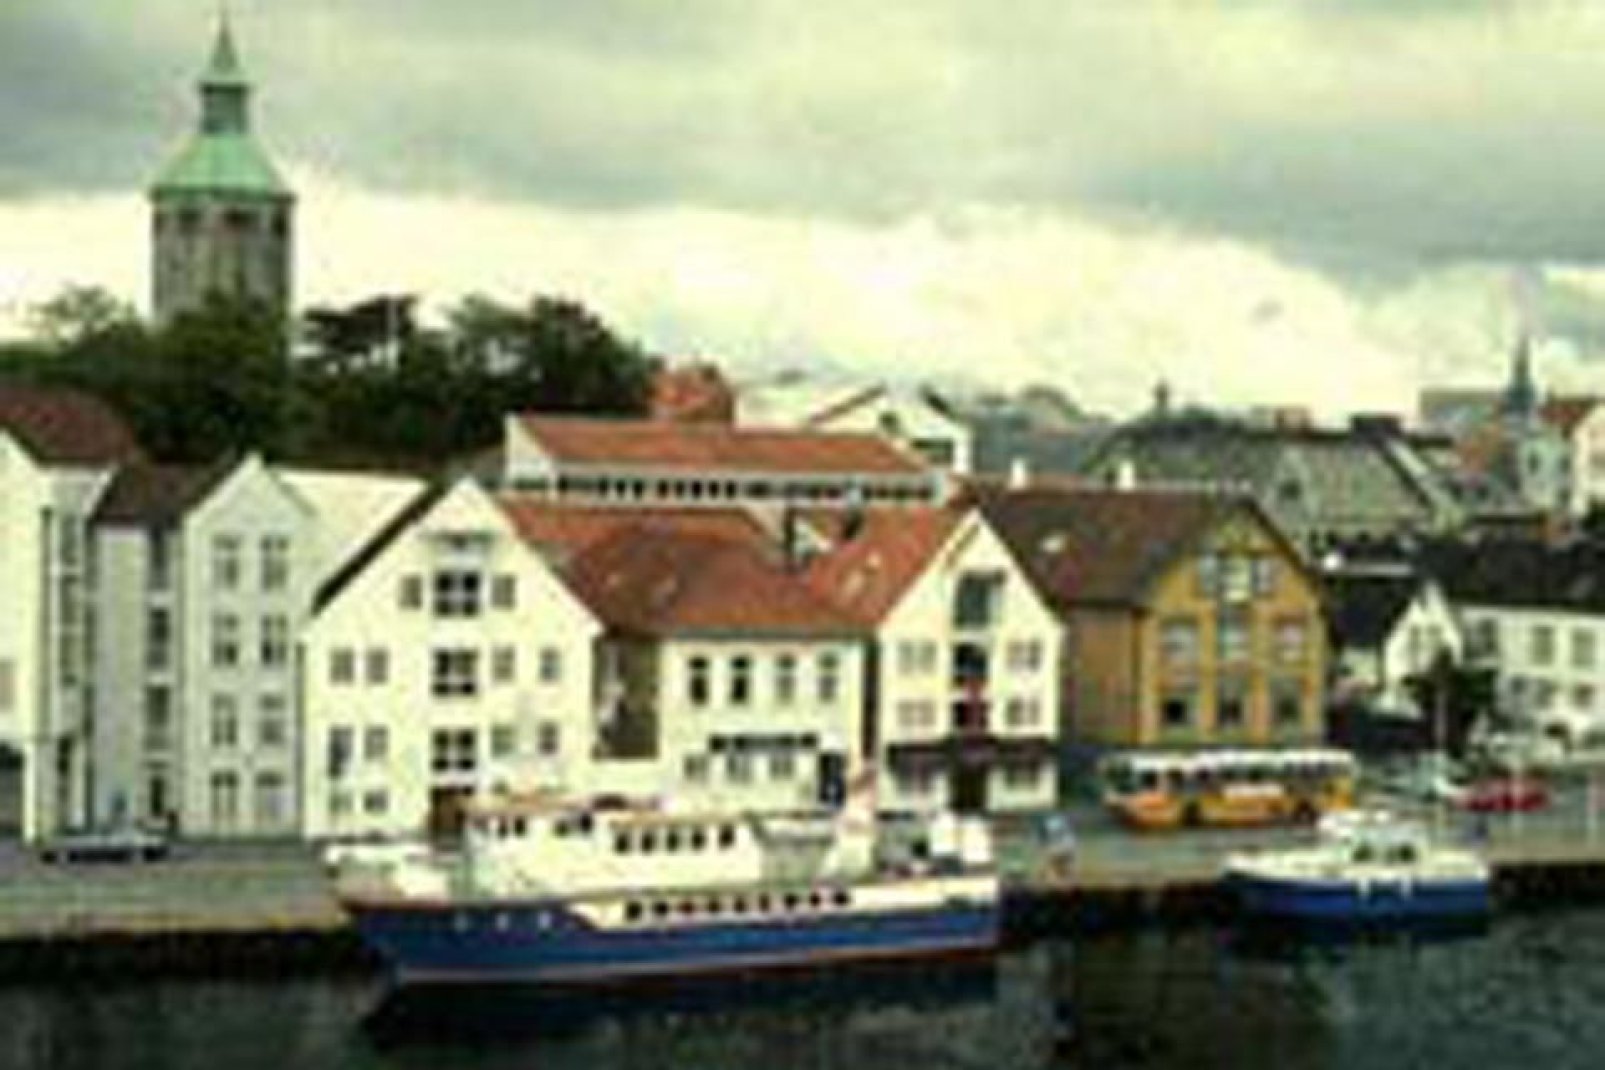 Las coloridas casas, construidas sobre pilotes, son una imagen característica de la ciudad cerca del puerto.